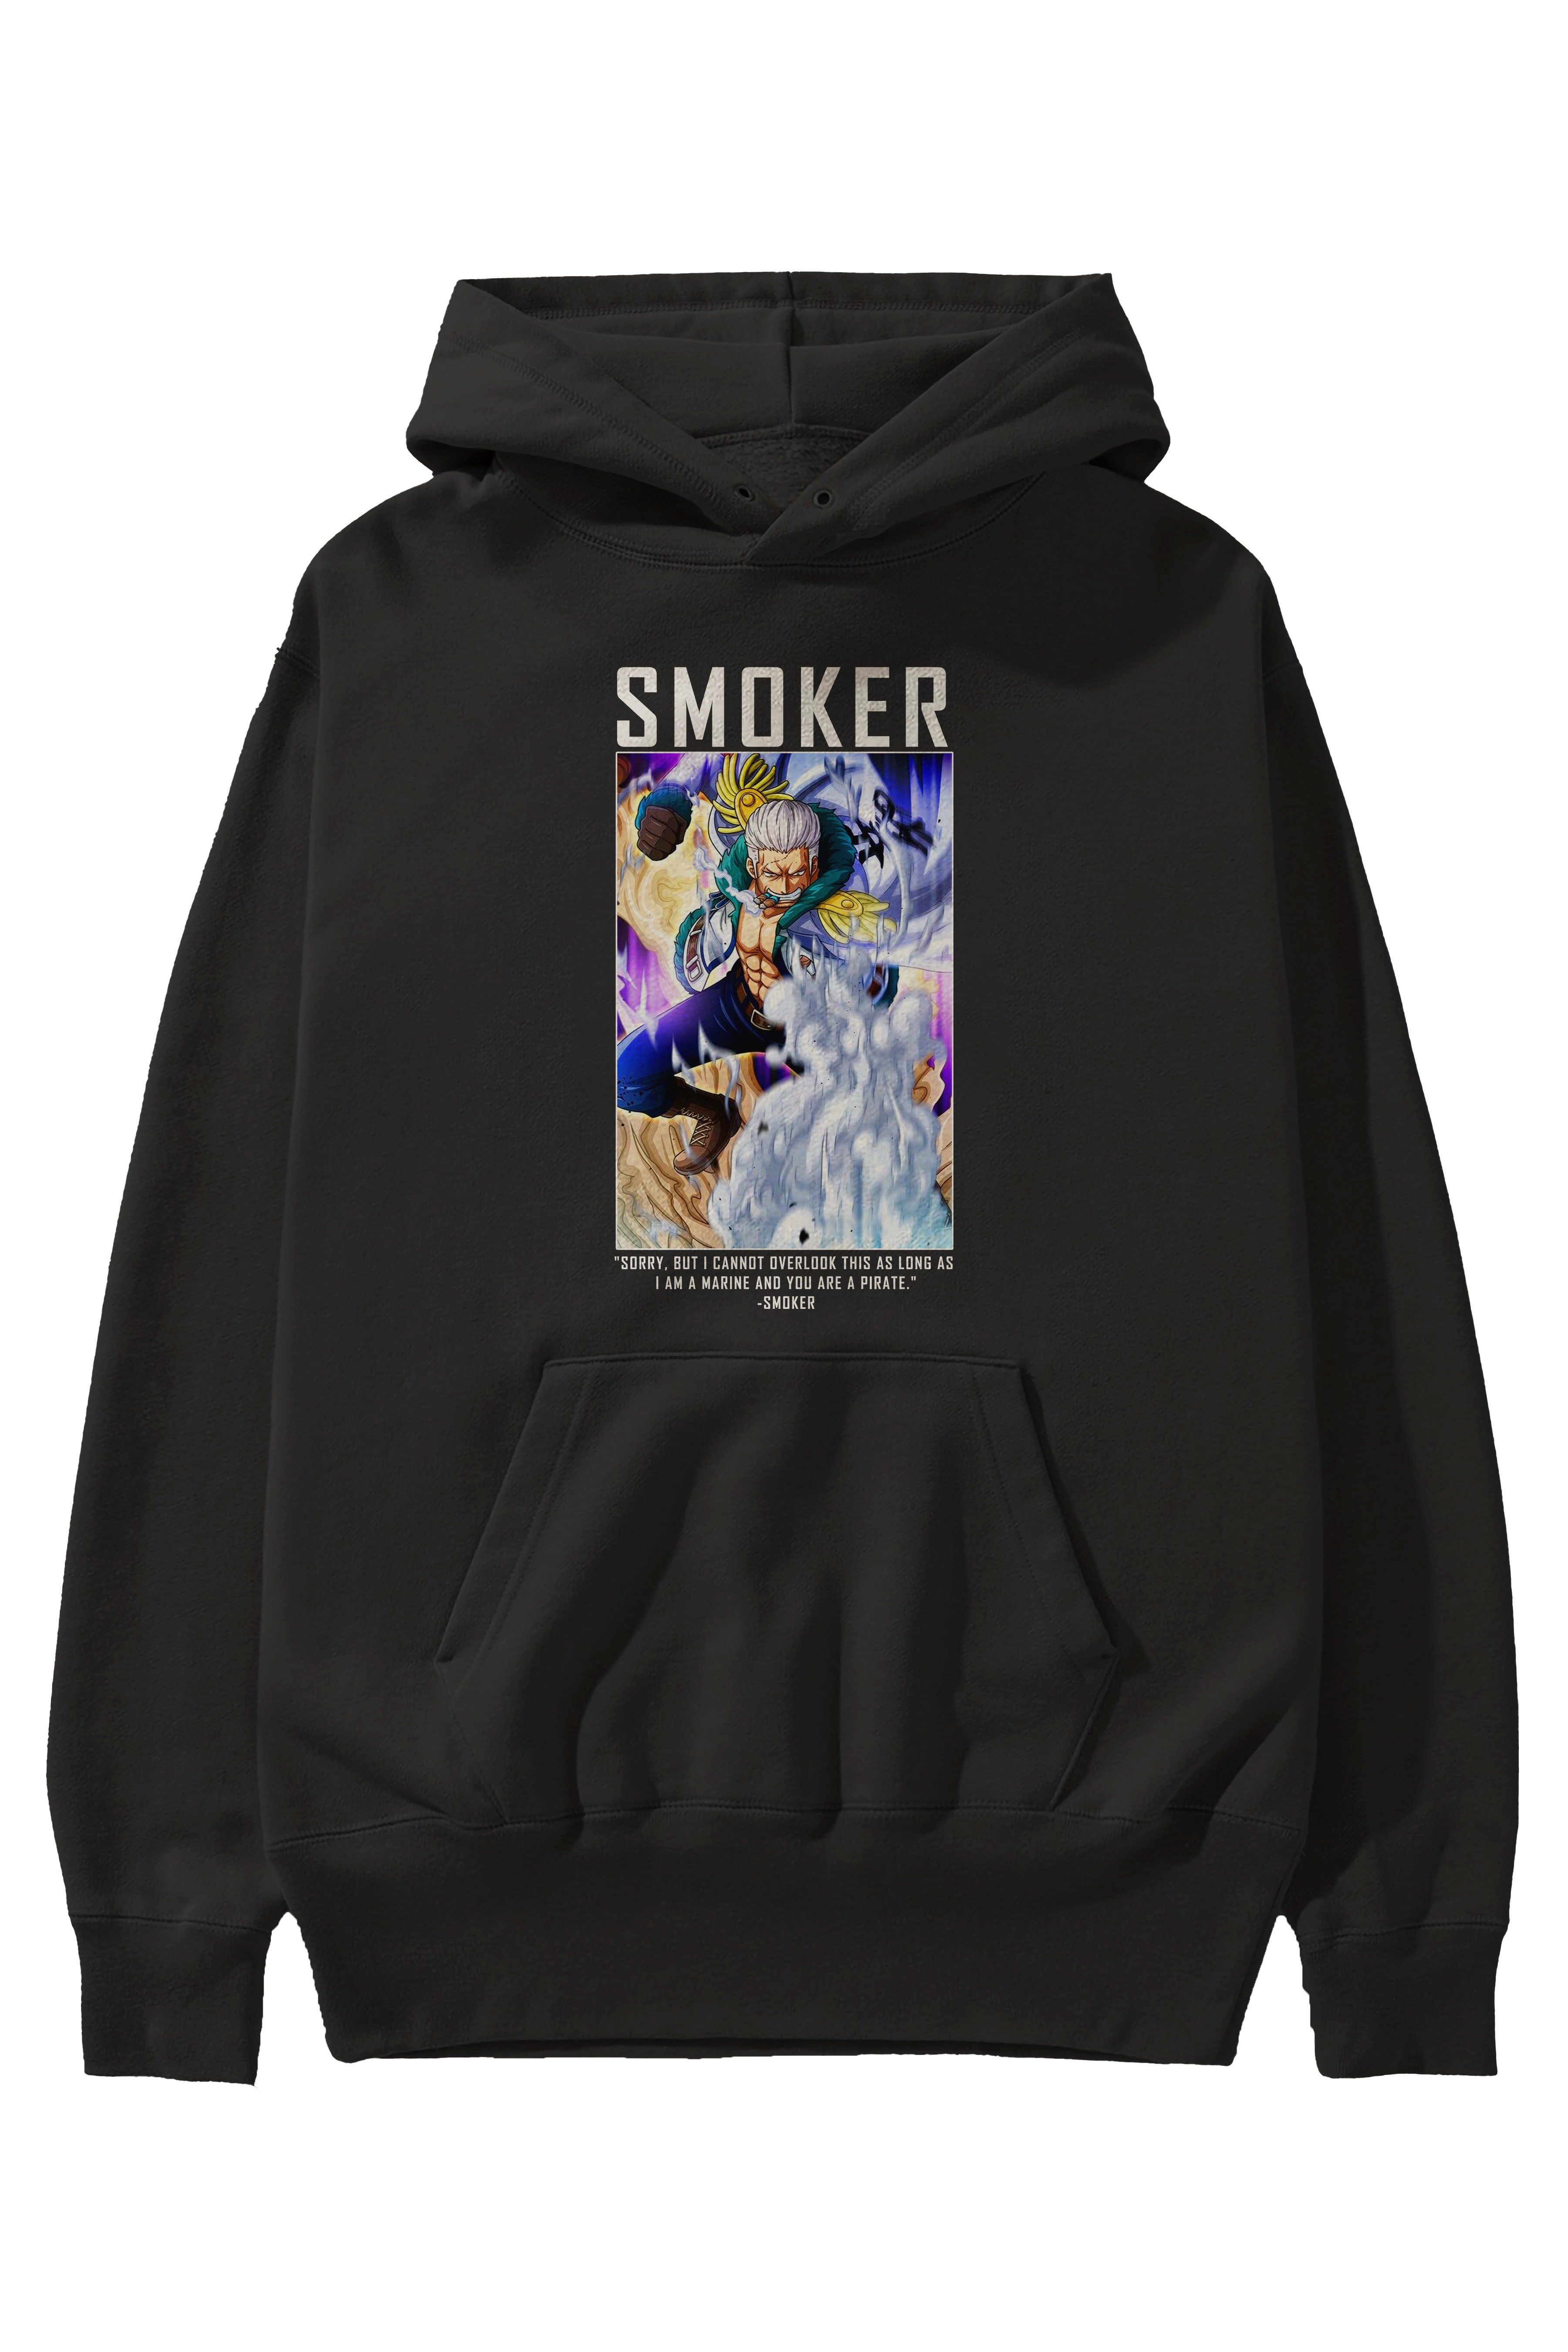 Smoker Anime Ön Baskılı Hoodie Oversize Kapüşonlu Sweatshirt Erkek Kadın Unisex